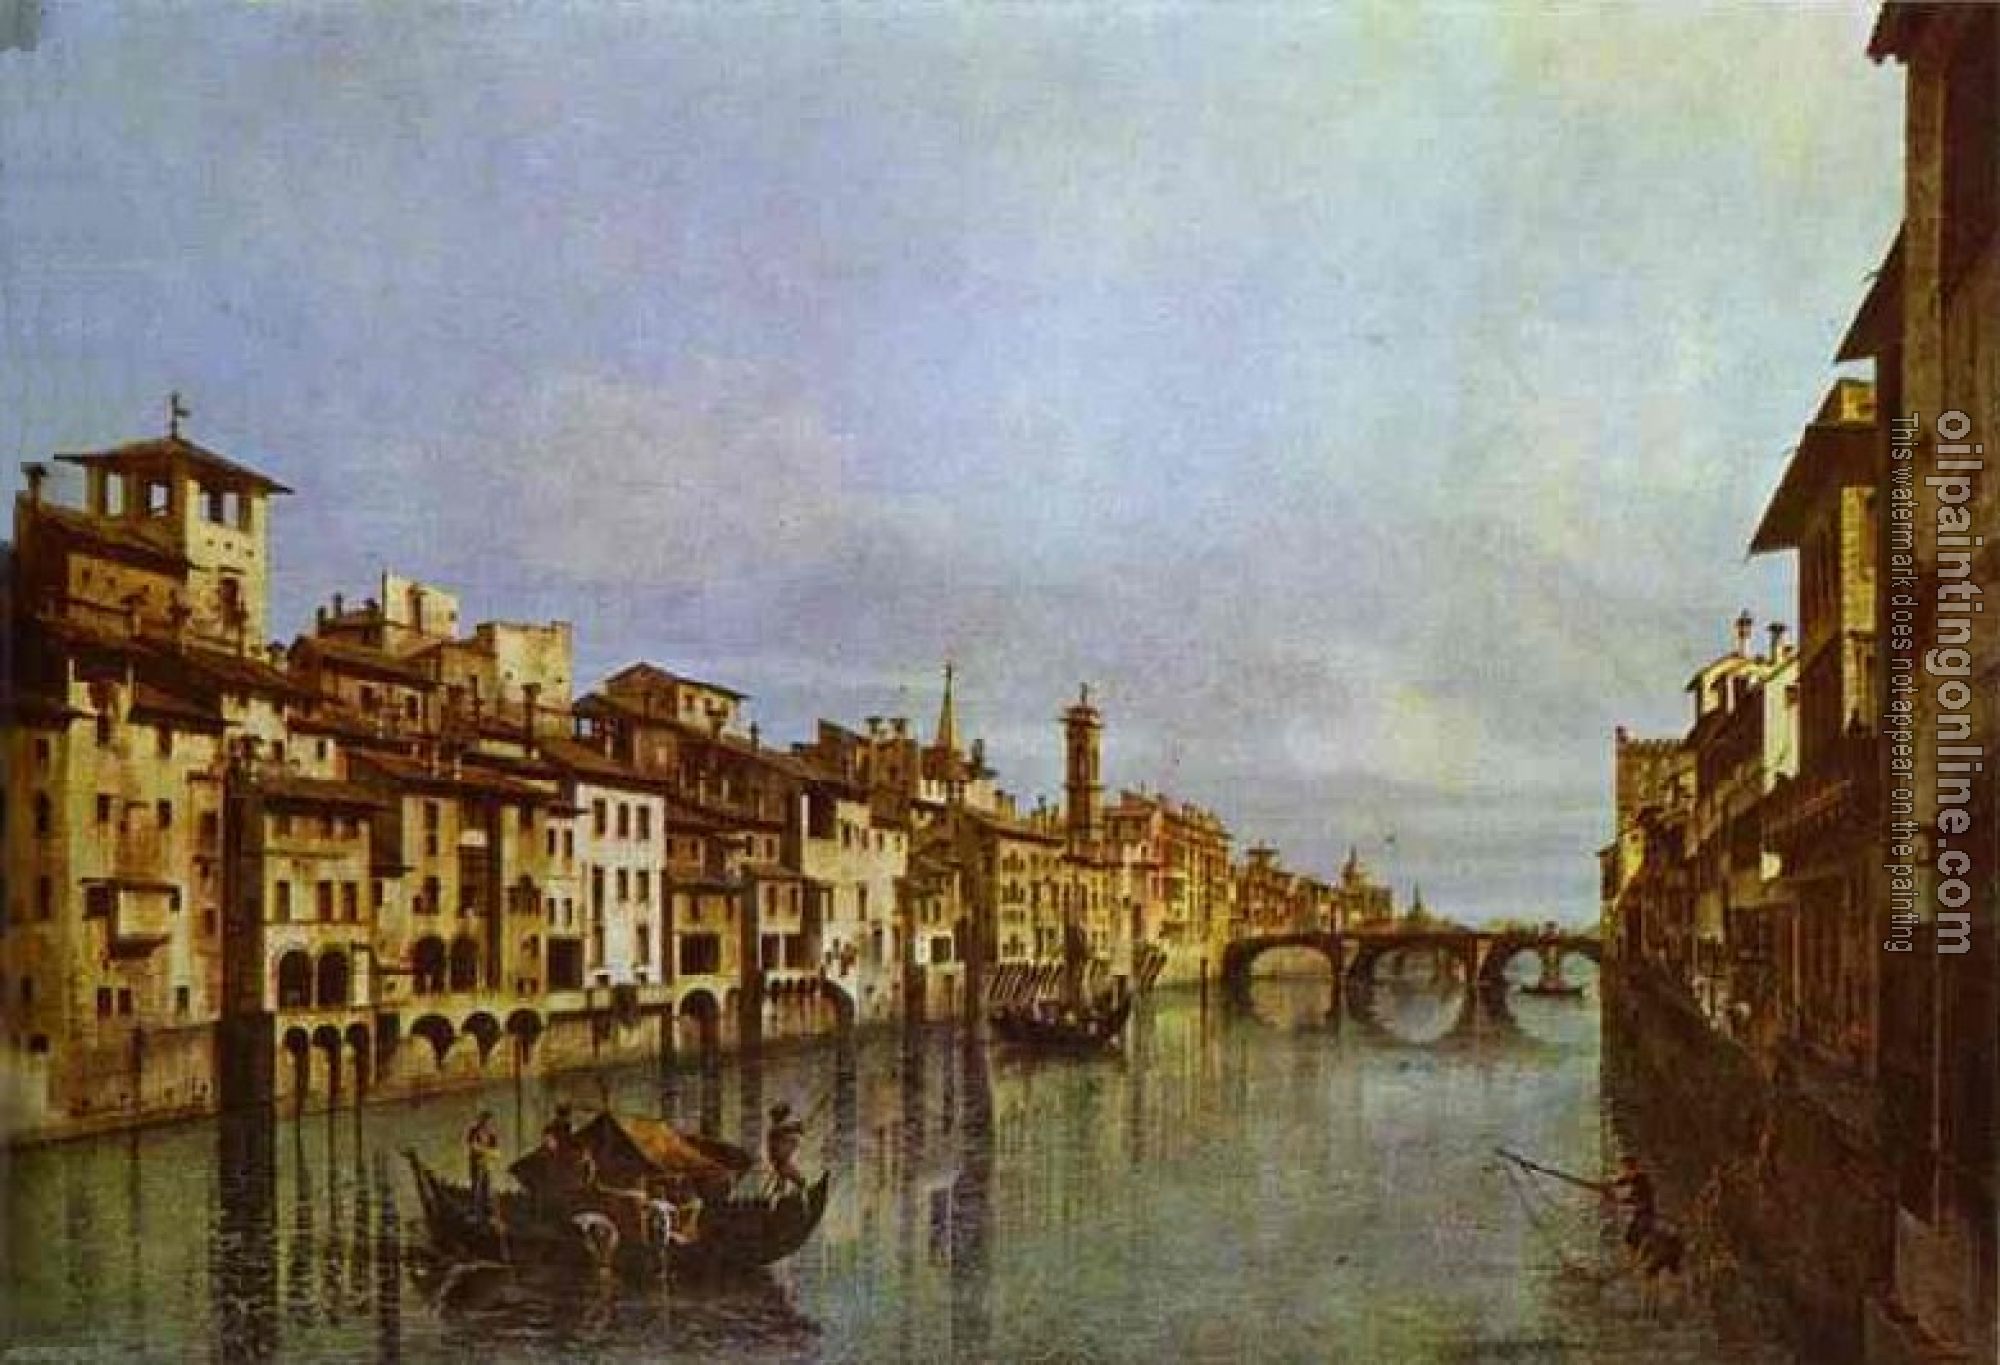 Bellotto, Bernardo - Arno in Florence